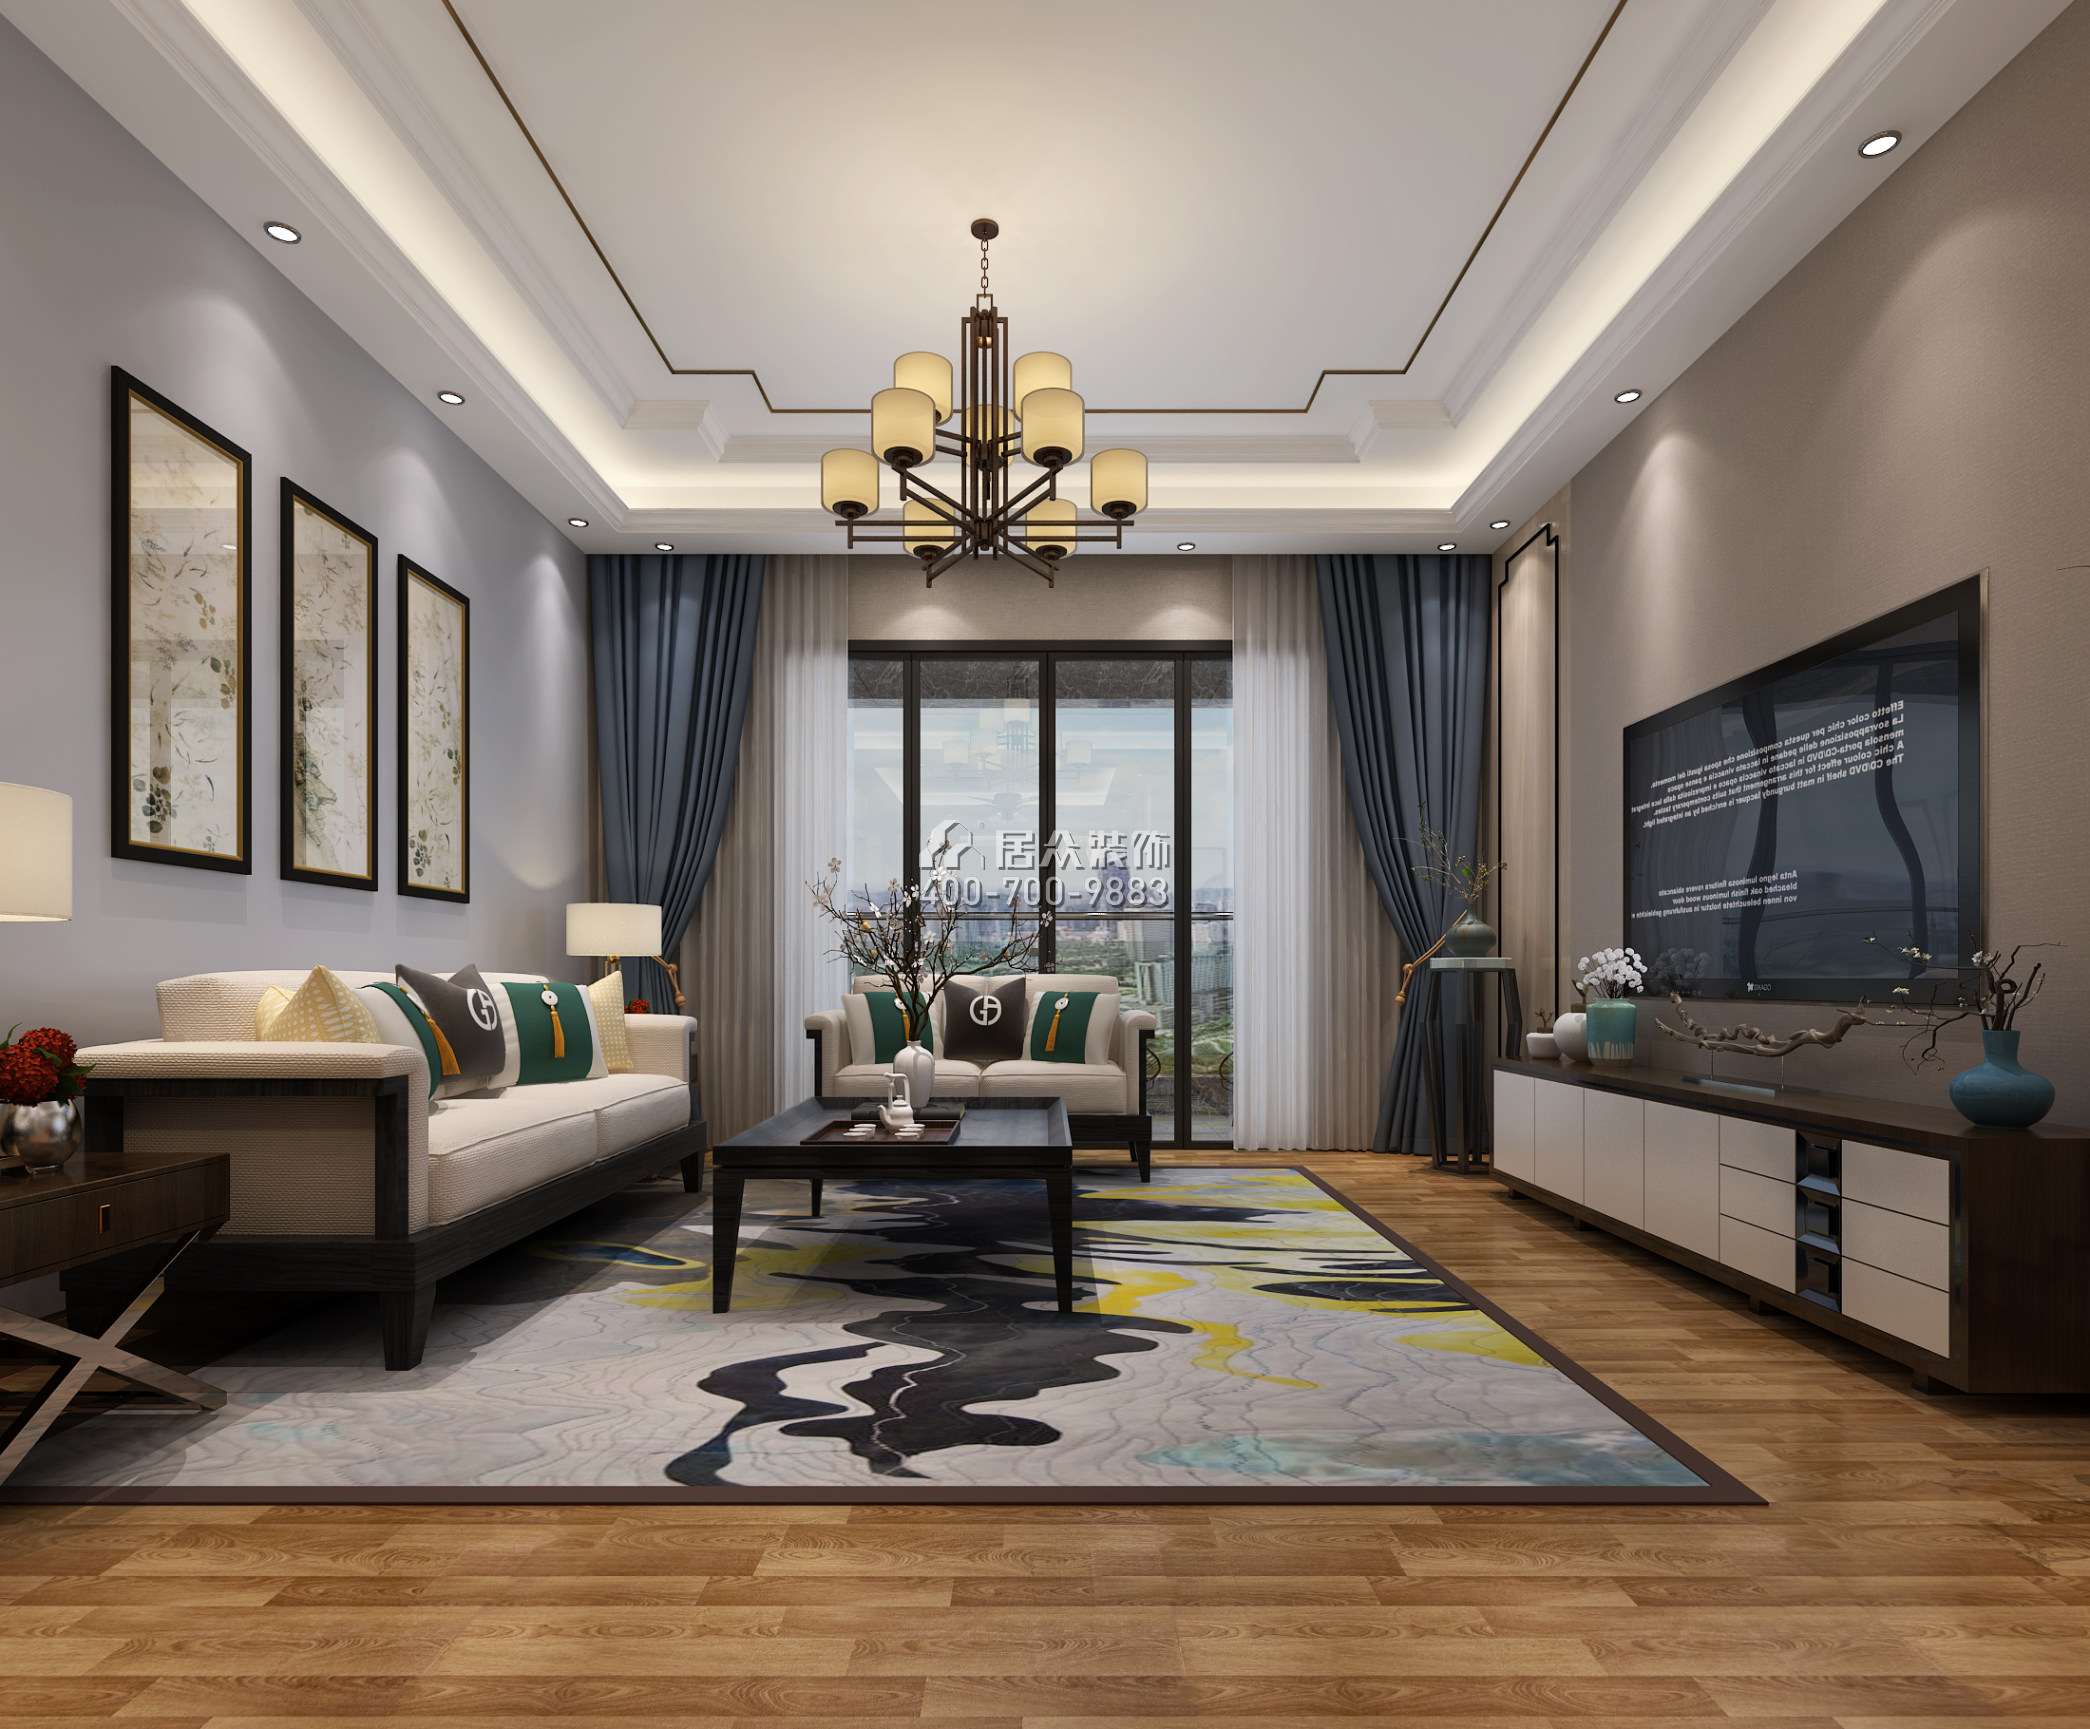 天悦湾160平方米中式风格平层户型客厅装修效果图